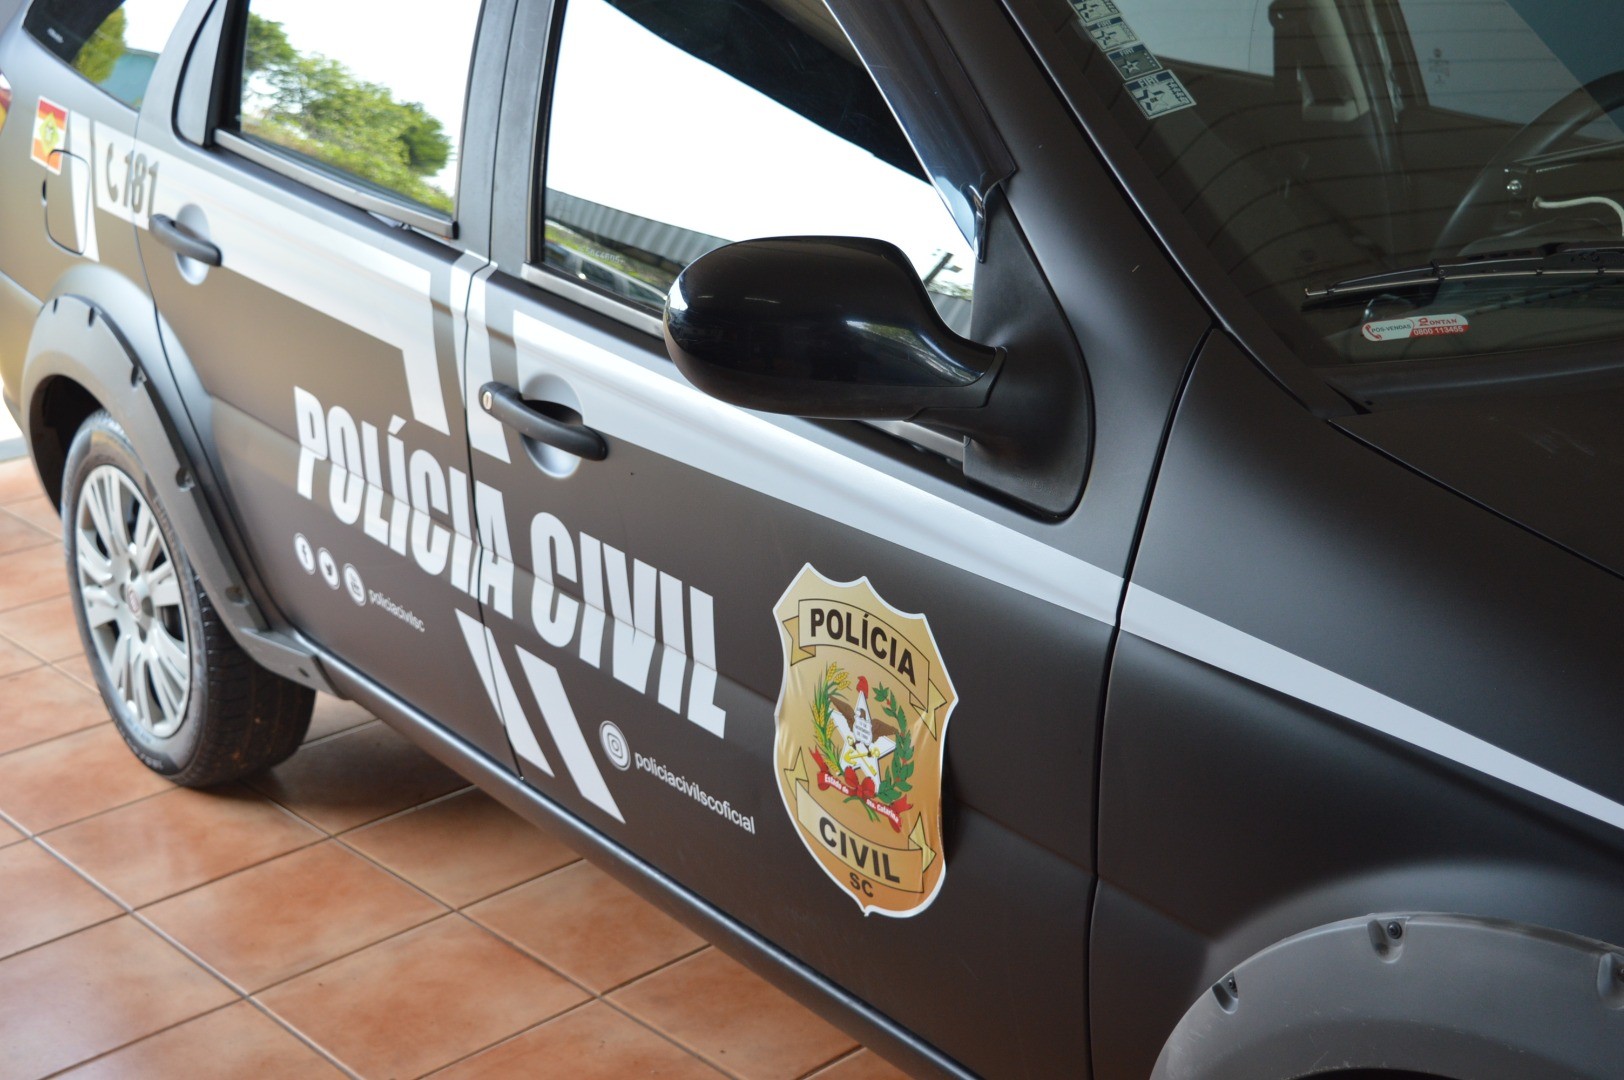 Polícia Civil realiza “Operação Rescaldo” em Cunha Porã e prende 4 pessoas por tráfico de drogas